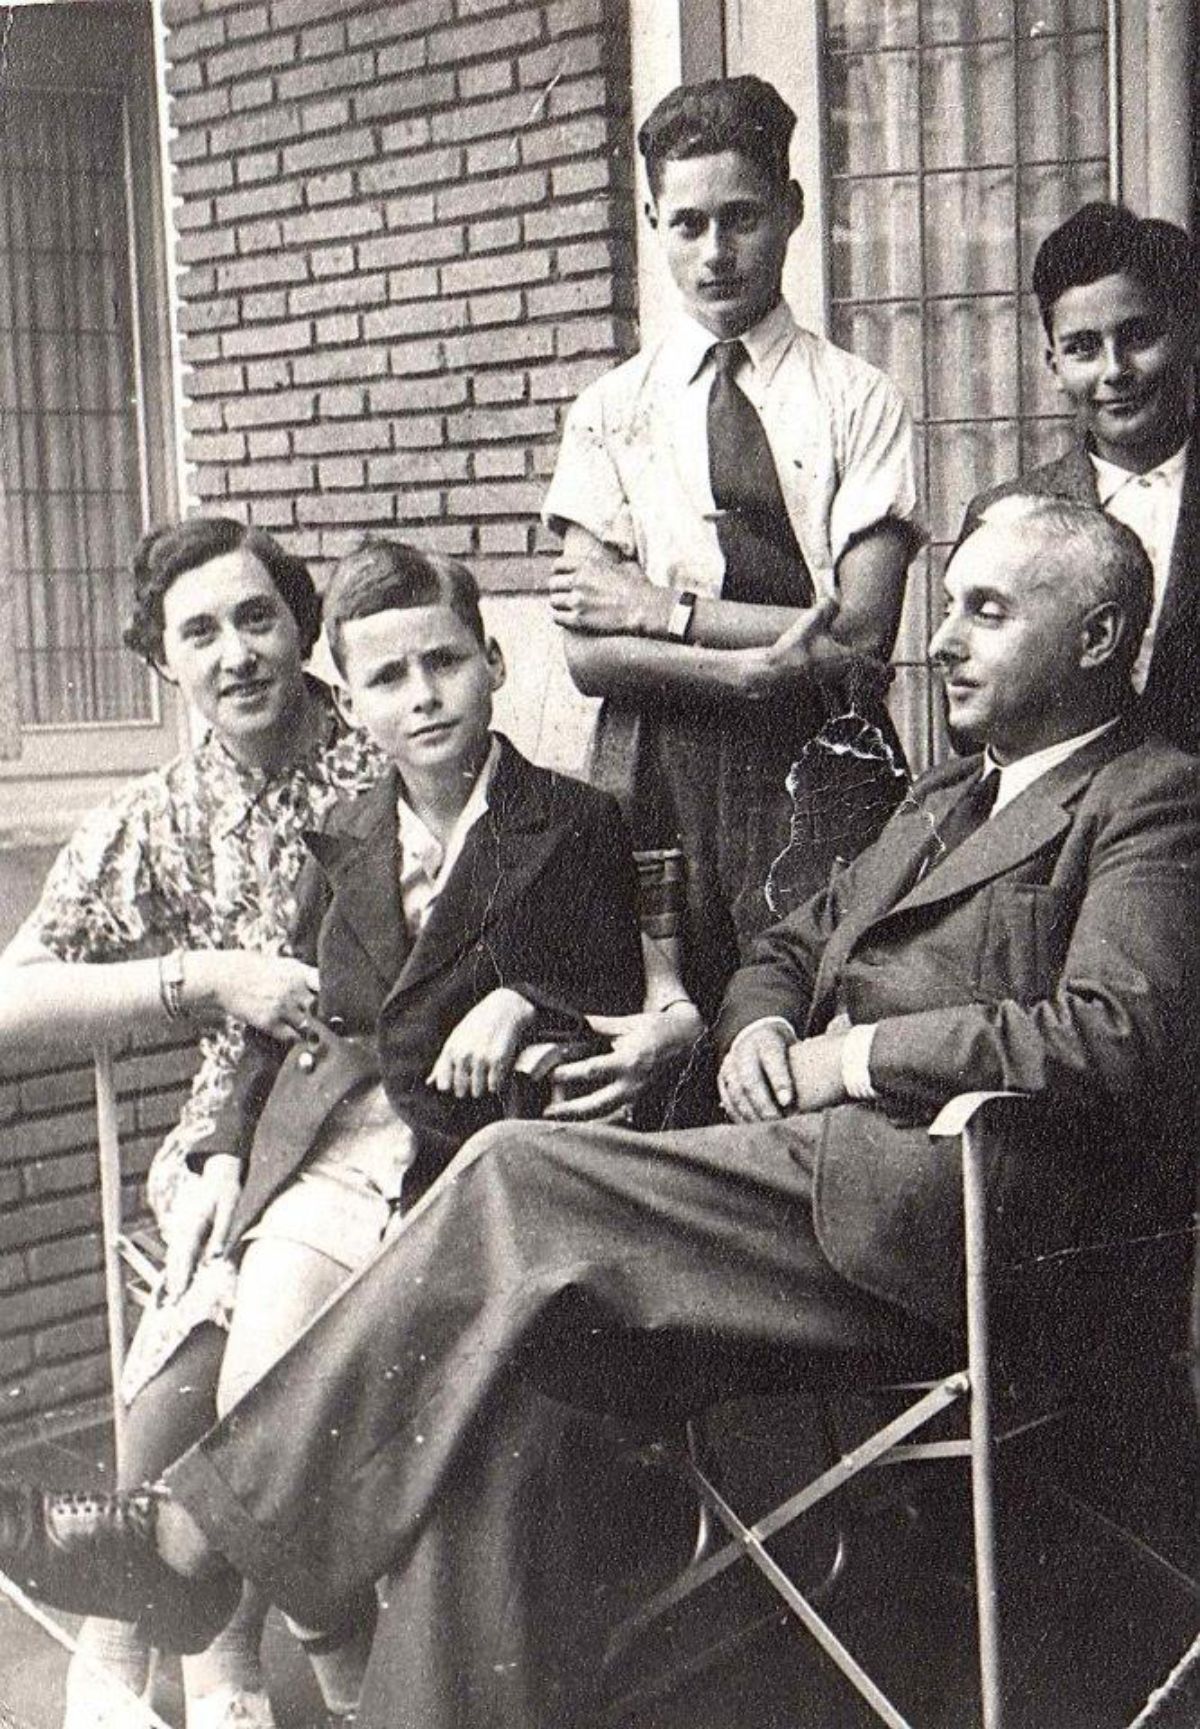 Nach der Flucht aus Deutschland: Familie Rosenstein auf der Terrasse ihrer neuen Bleibe in der Holbeinstraat, Amsterdam, Frühjahr 1935. Jerry ist der Kleine mit dem skeptischen Blick.